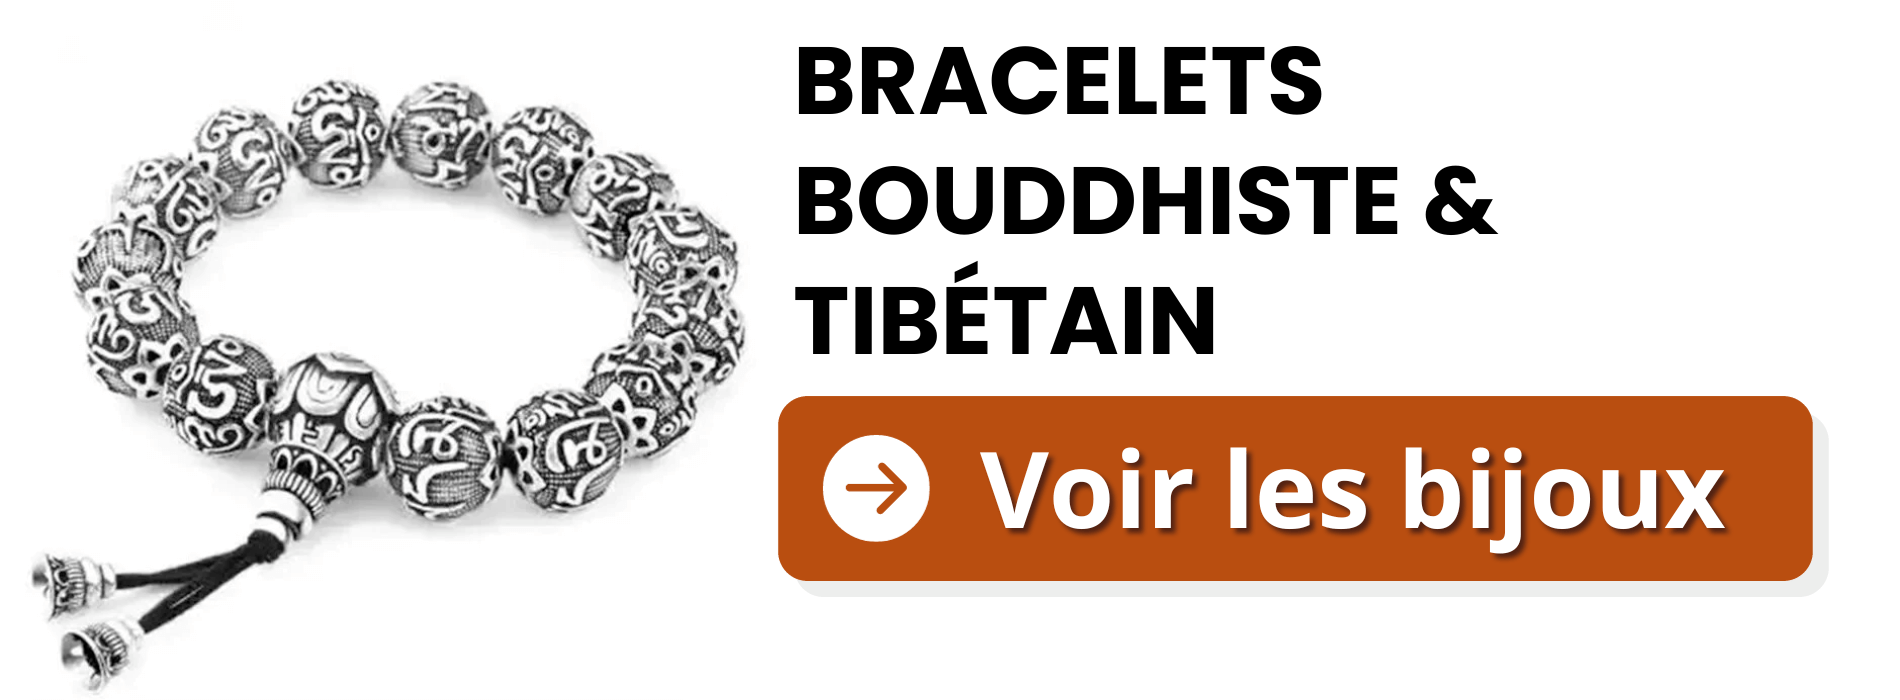 bracelets-bouddhiste